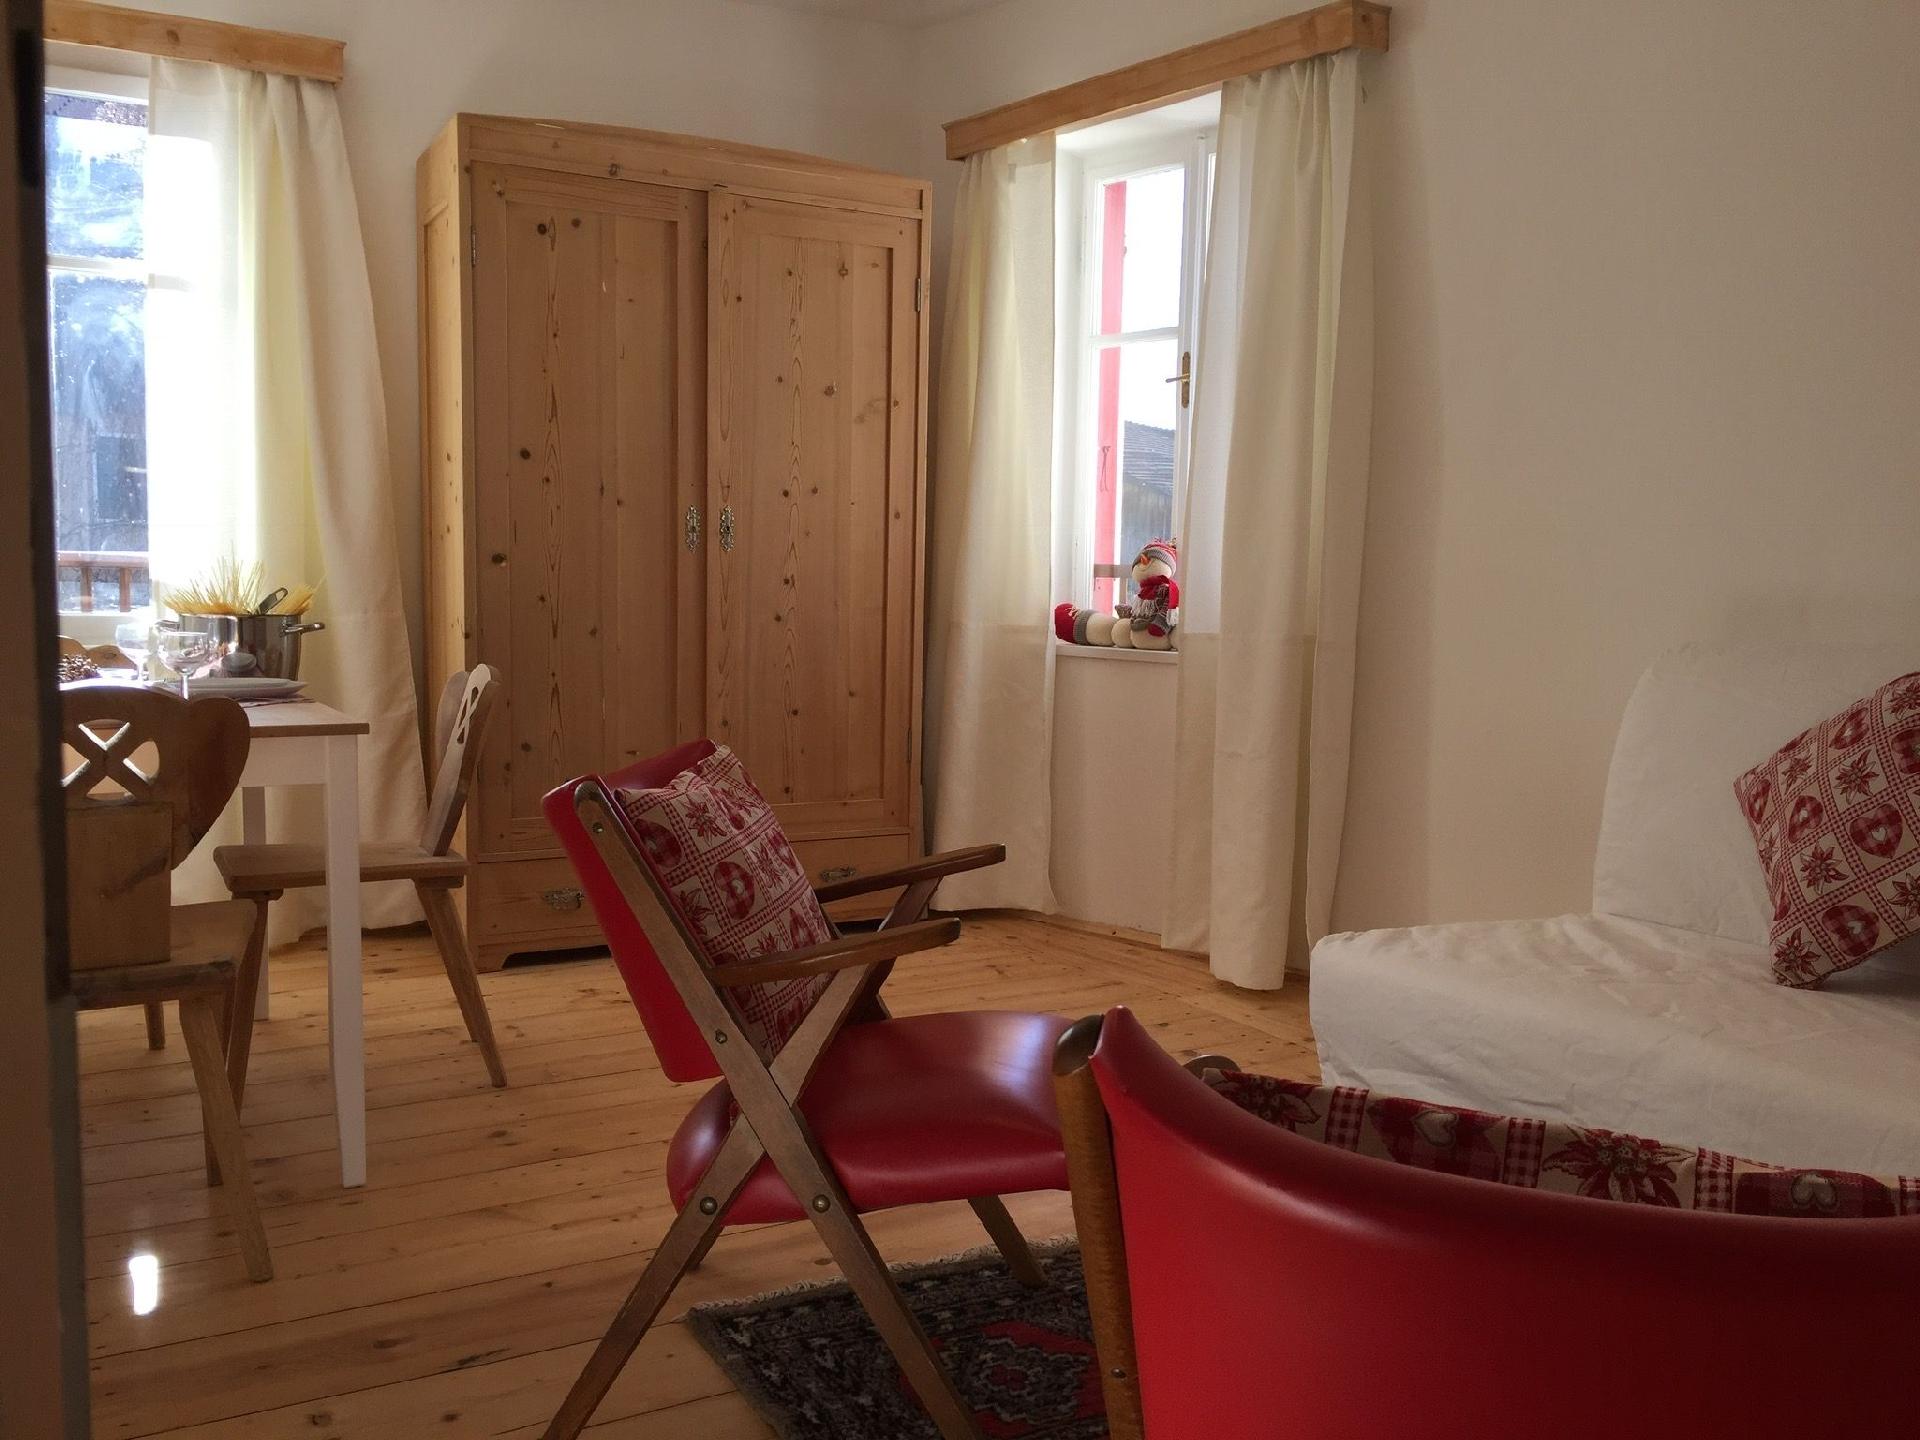 Ferienwohnung für 6 Personen ca. 80 m² i Ferienhaus in Europa